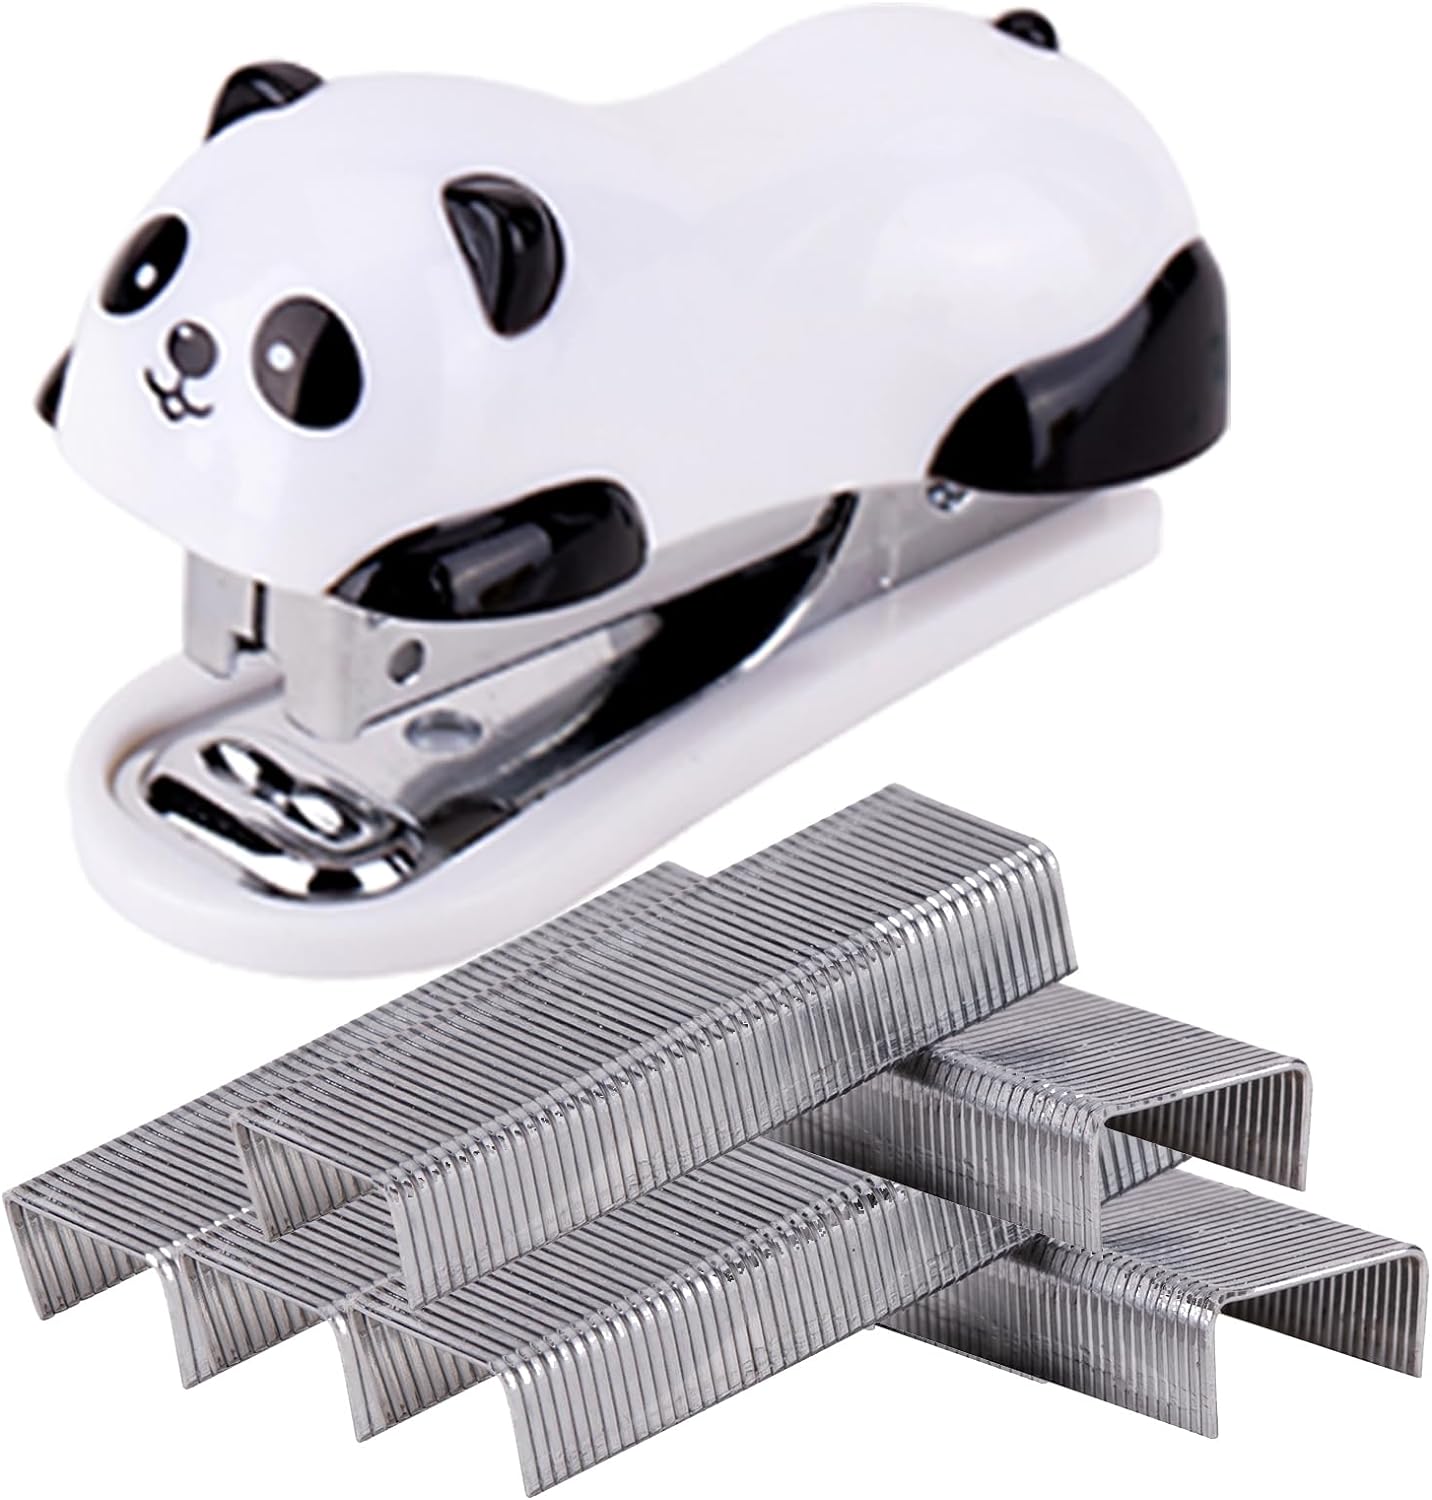 Yoki Peony Mini Stapler with Staples,Small Stapler for Desk, Portable Travel Stapler